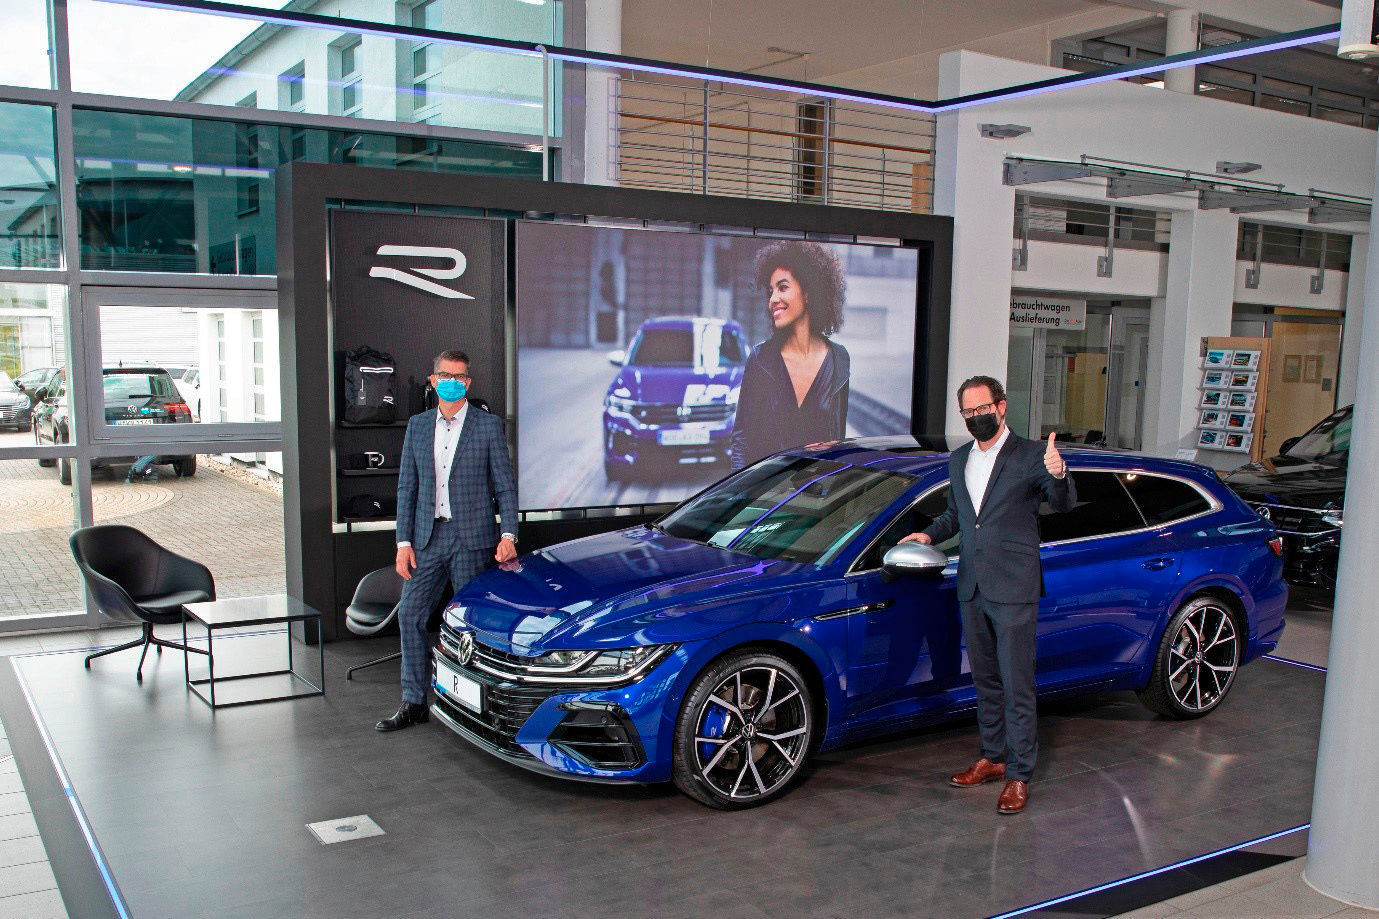 New dealership concept Volkswagen R